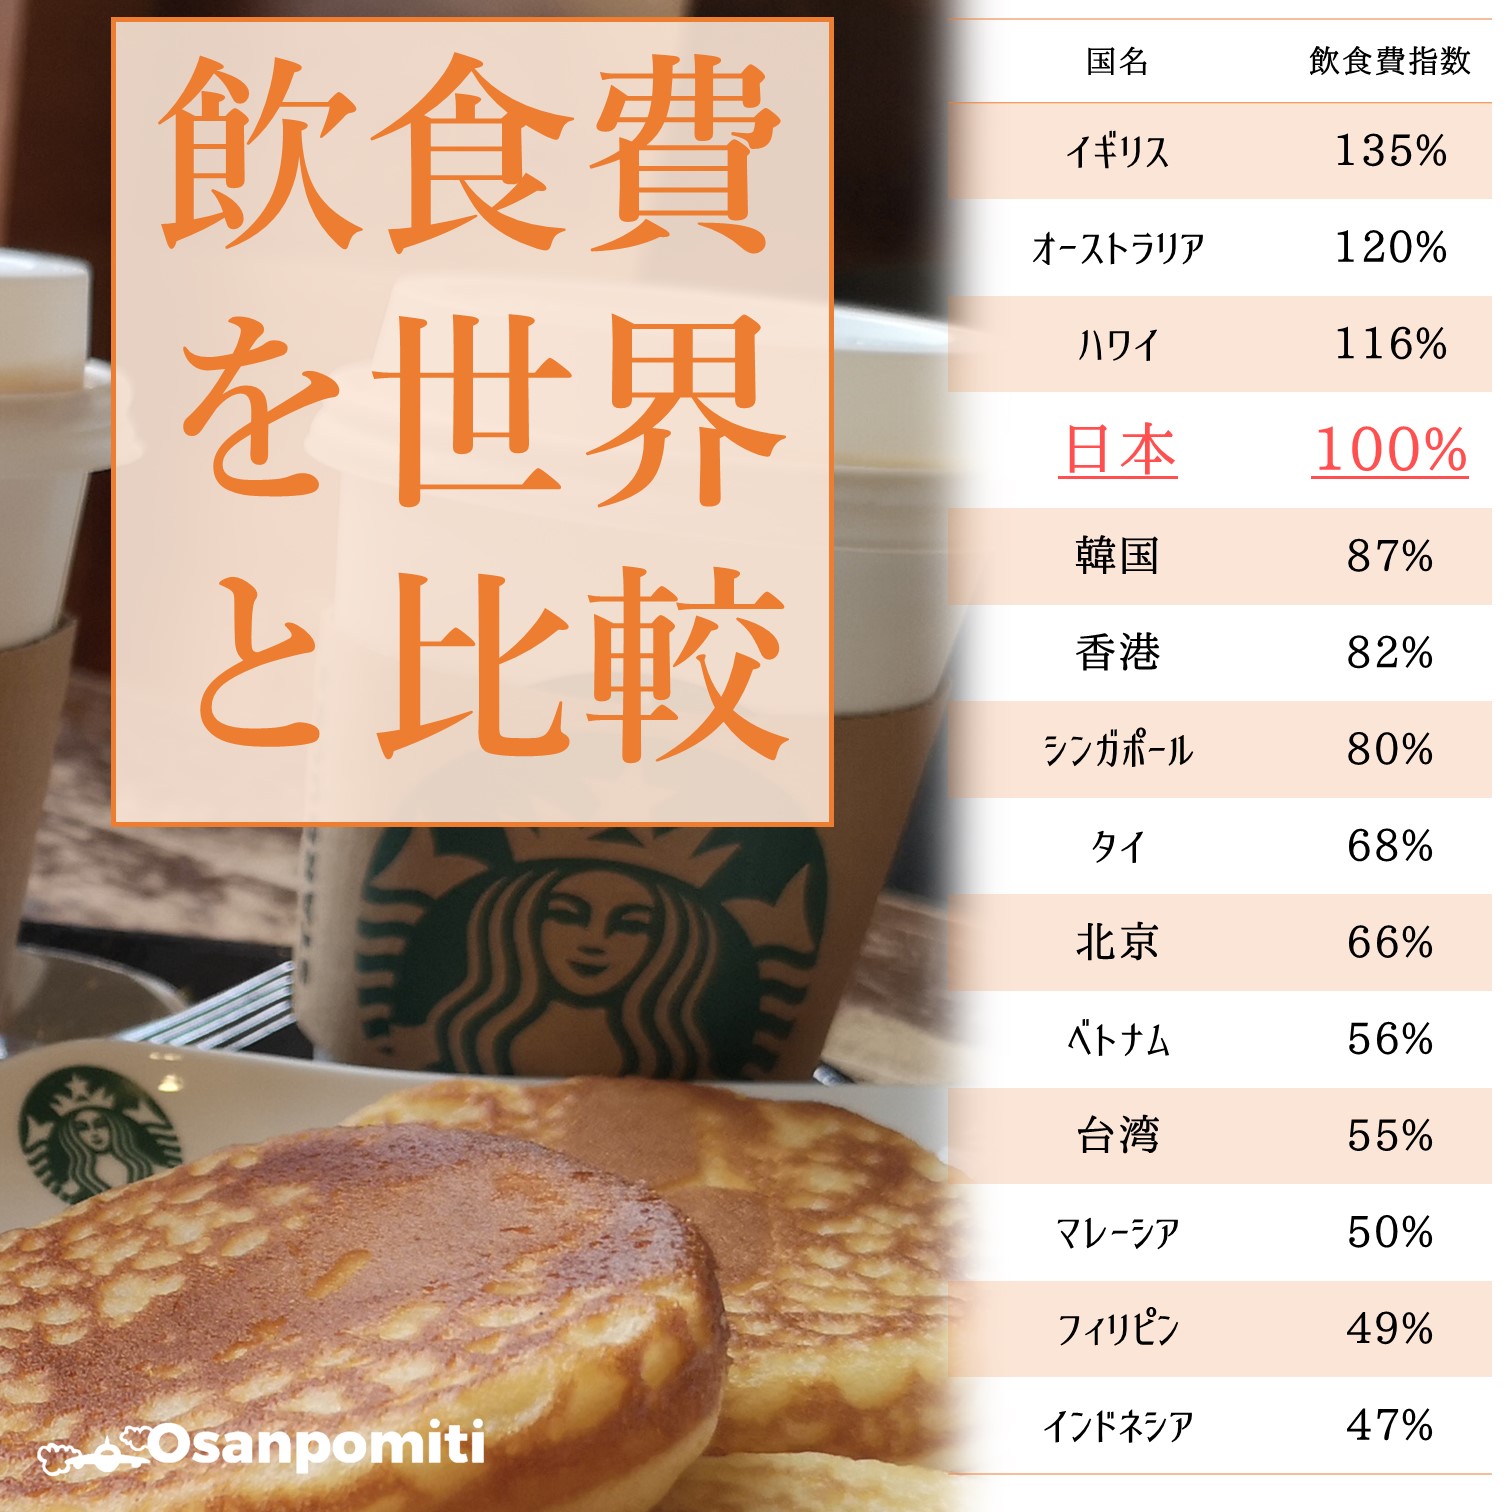 日本の飲食費を世界と比較